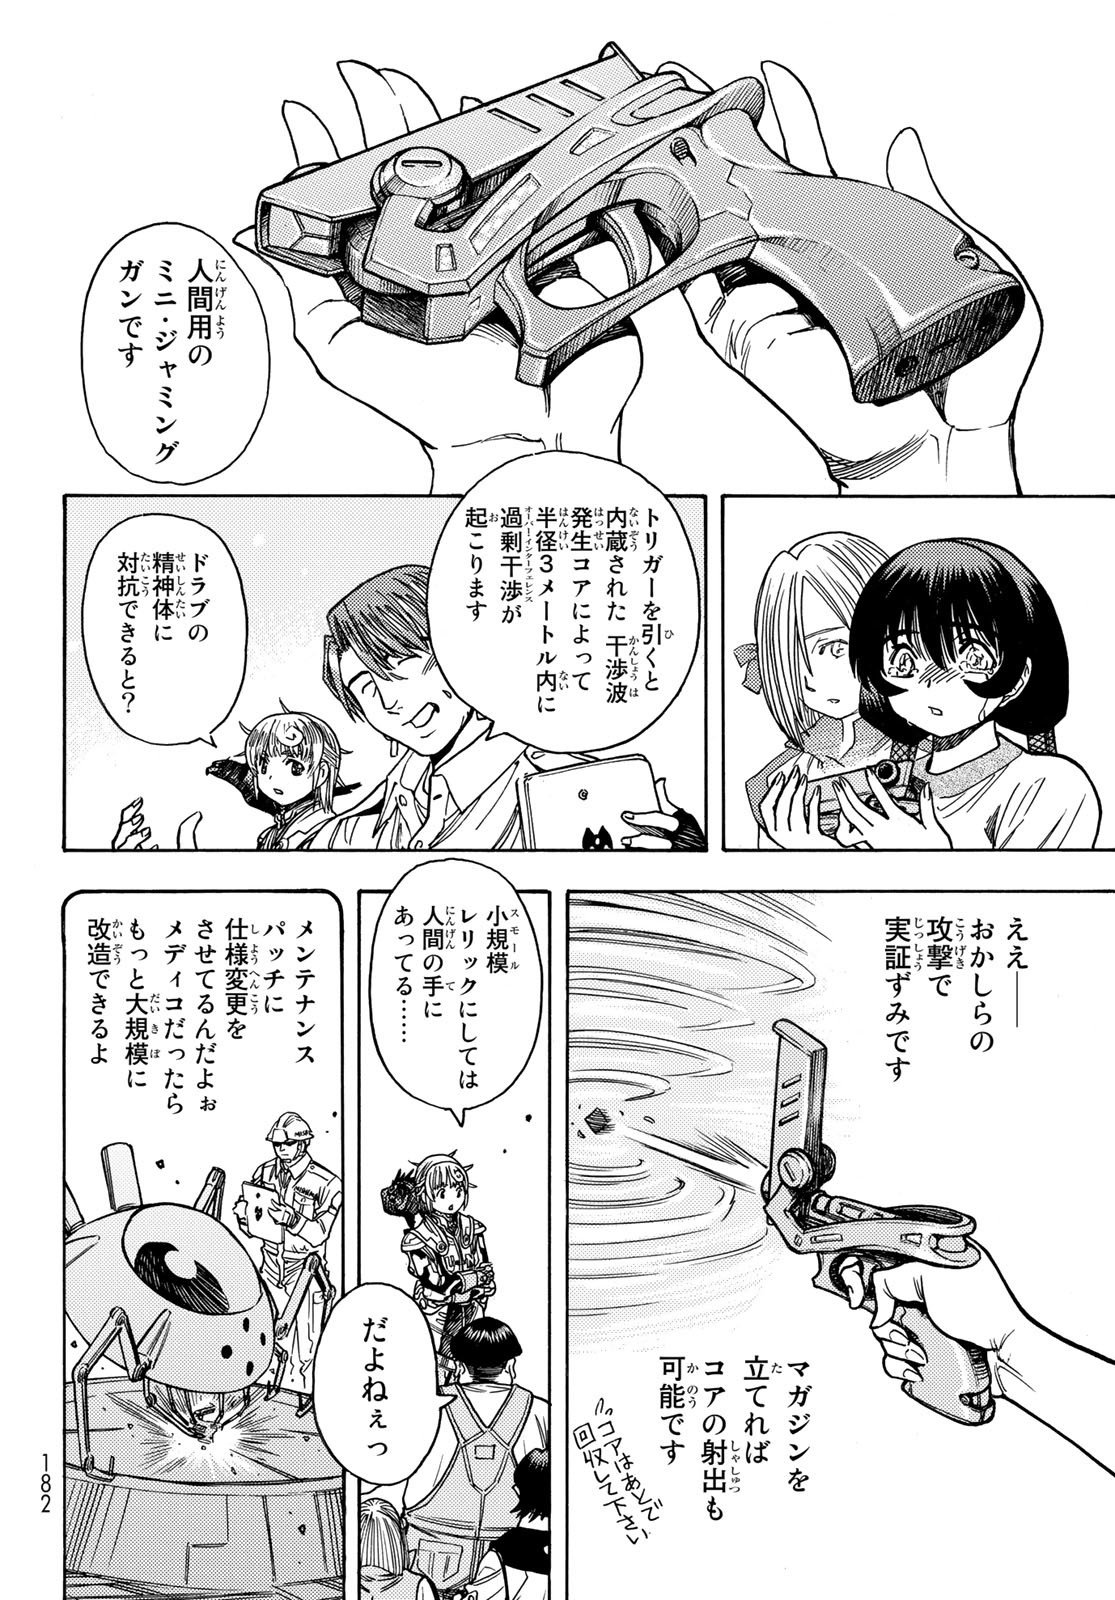 Mugou no Schnell Gear: Chikyuugai Kisouka AI - Chapter 44 - Page 16